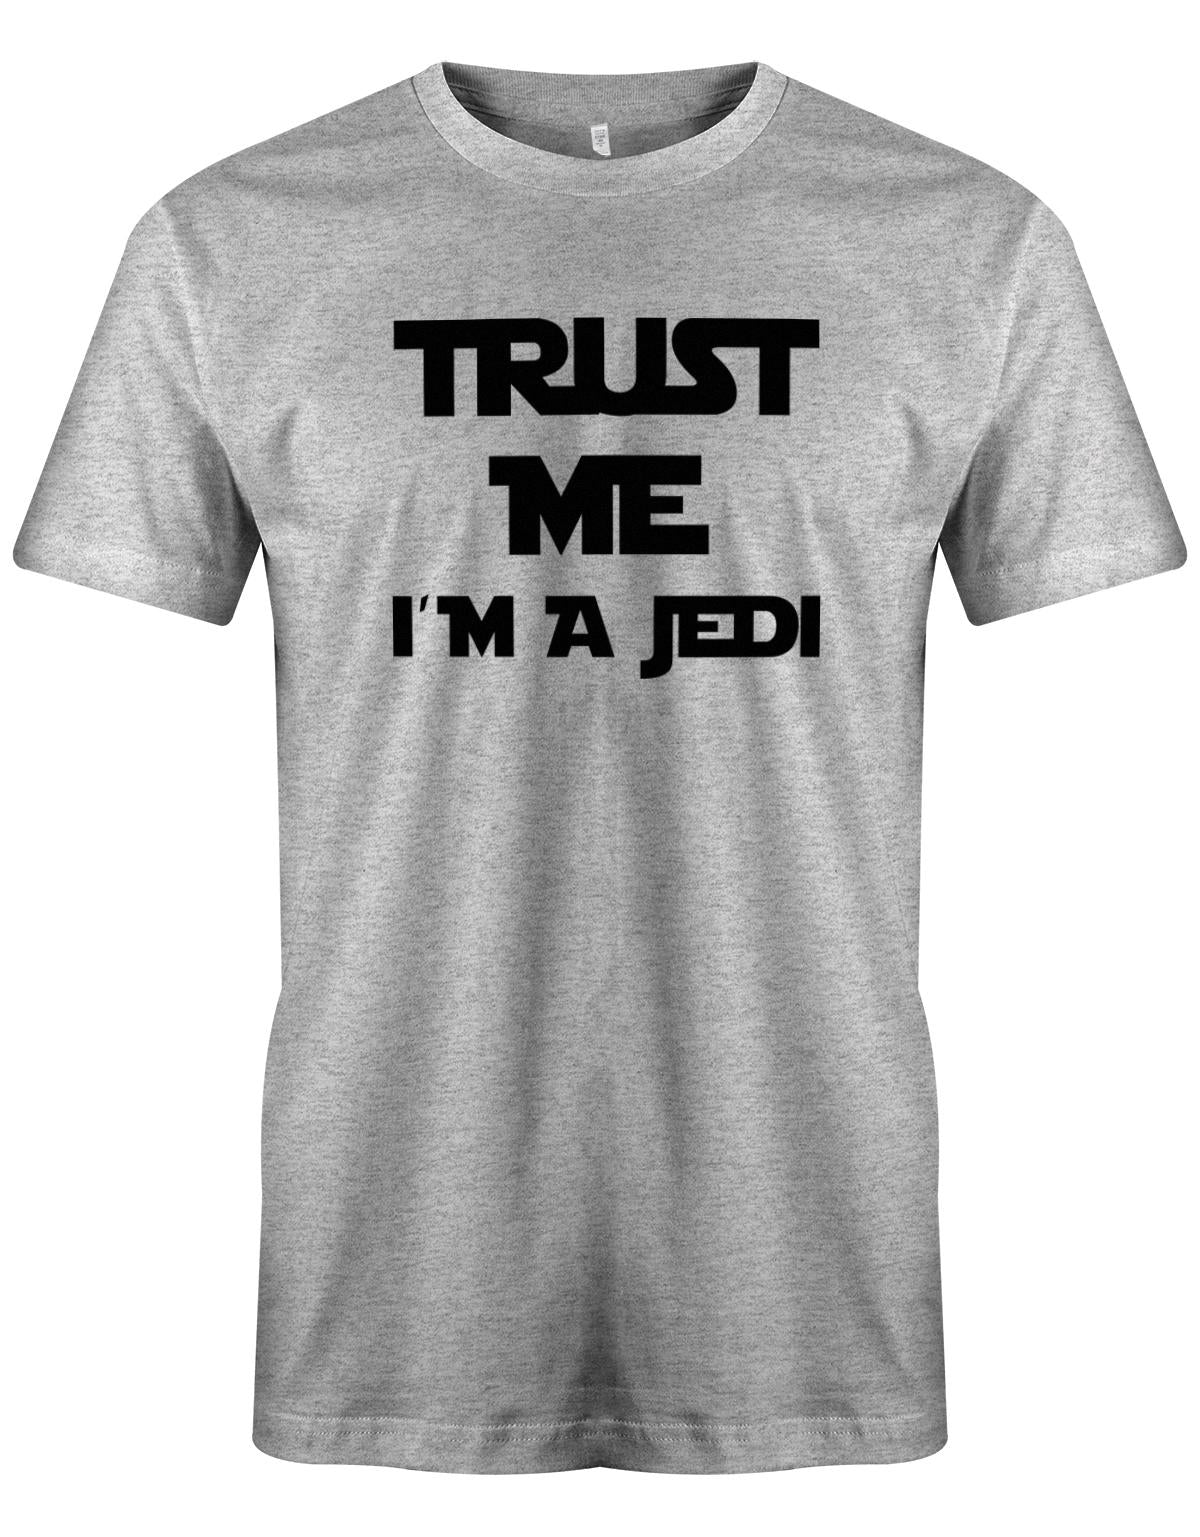 Trust-me-i-m-a-jedi-Herren-Shirt-Grau